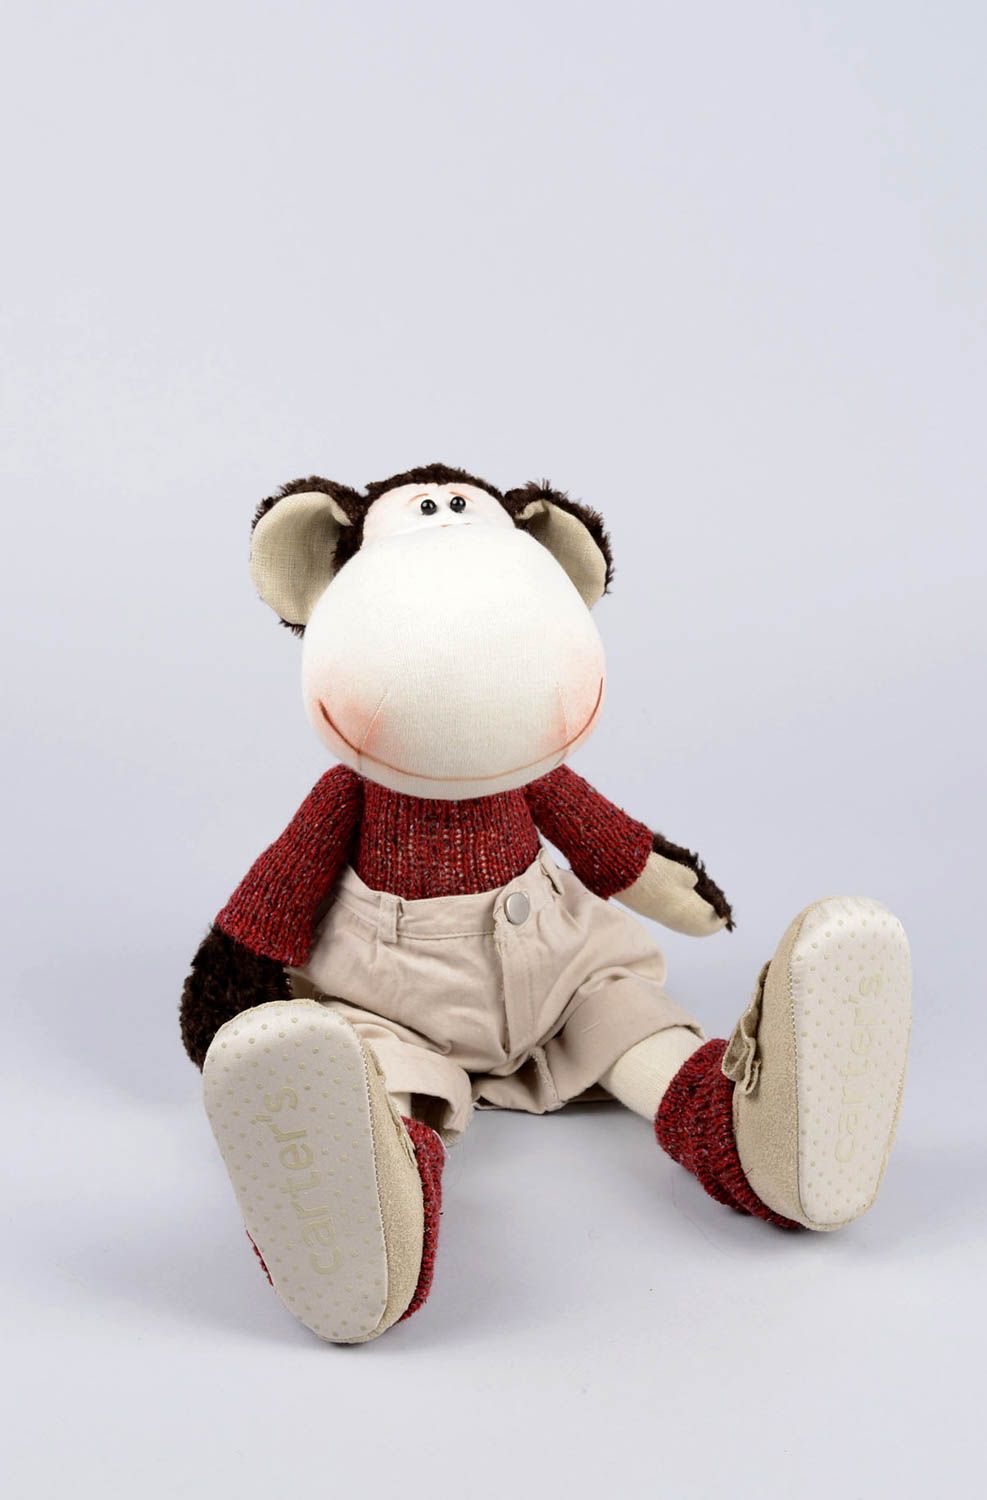 Мягкая игрушка обезьянка игрушка ручной работы интересный подарок ребенку фото 2